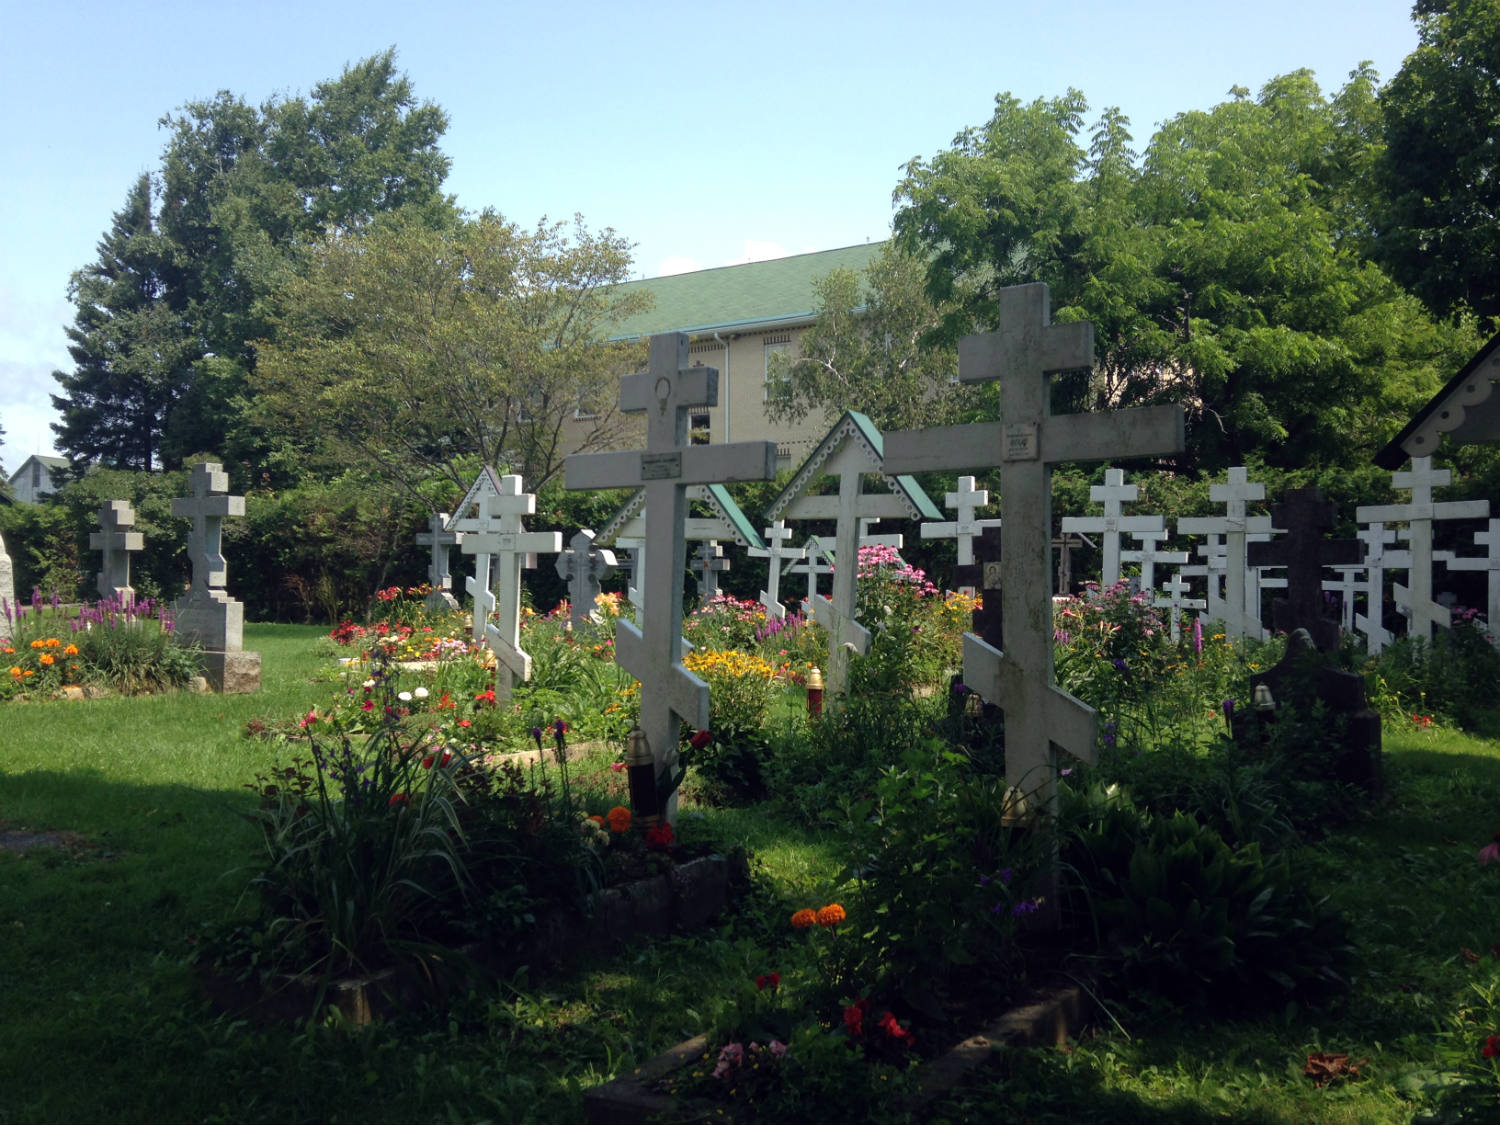 Holy Trinity Monastery - Jordanville, NY Church #1 Cemetery